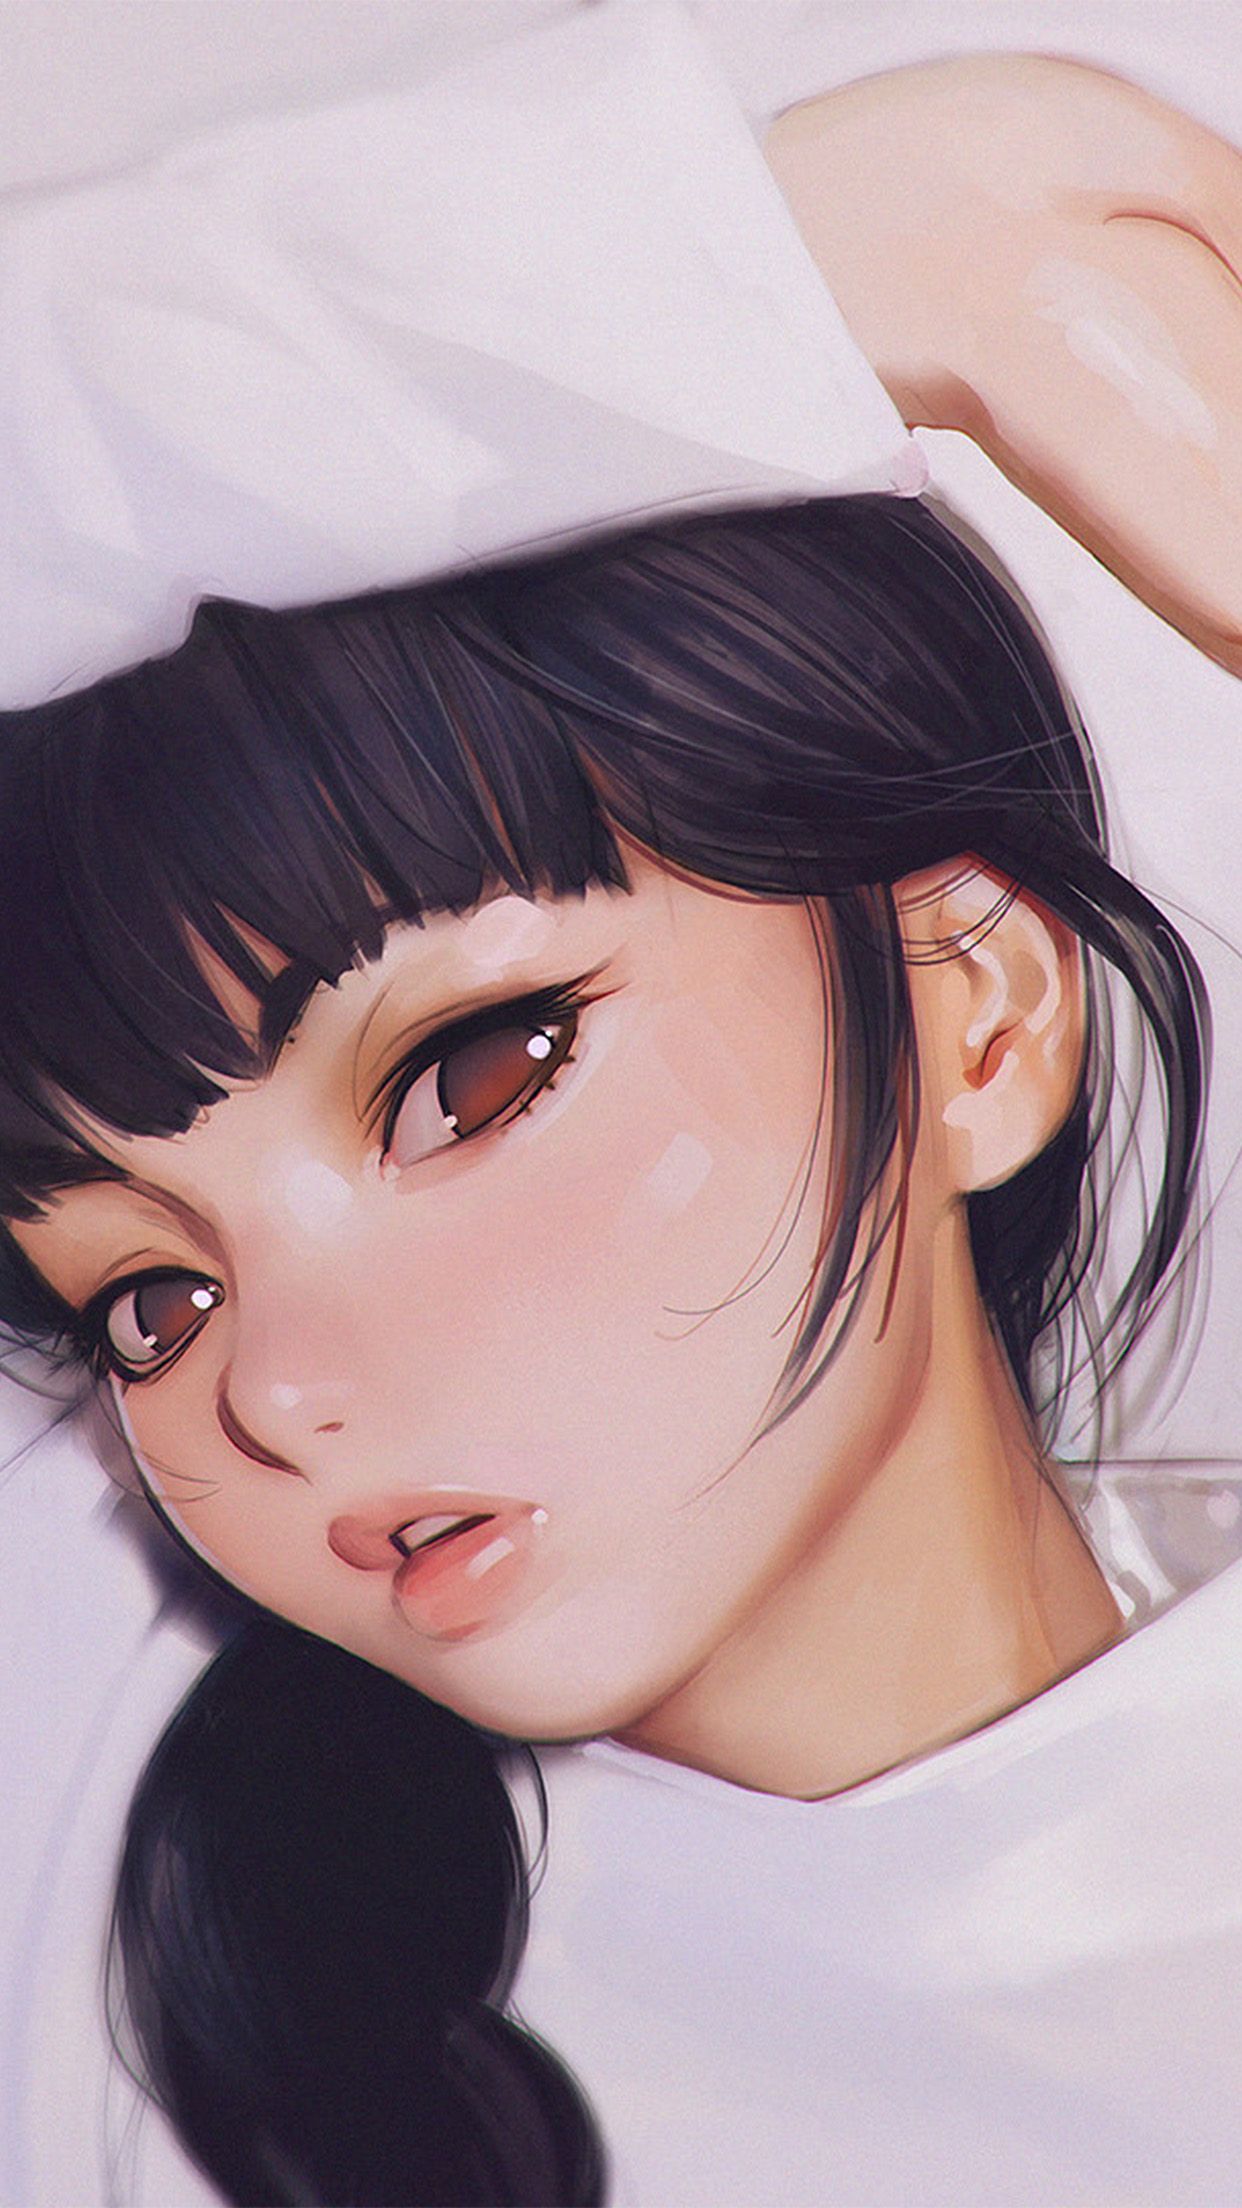 Ilya Kuvshinov Anime Girl Shy Cute Illustration Art